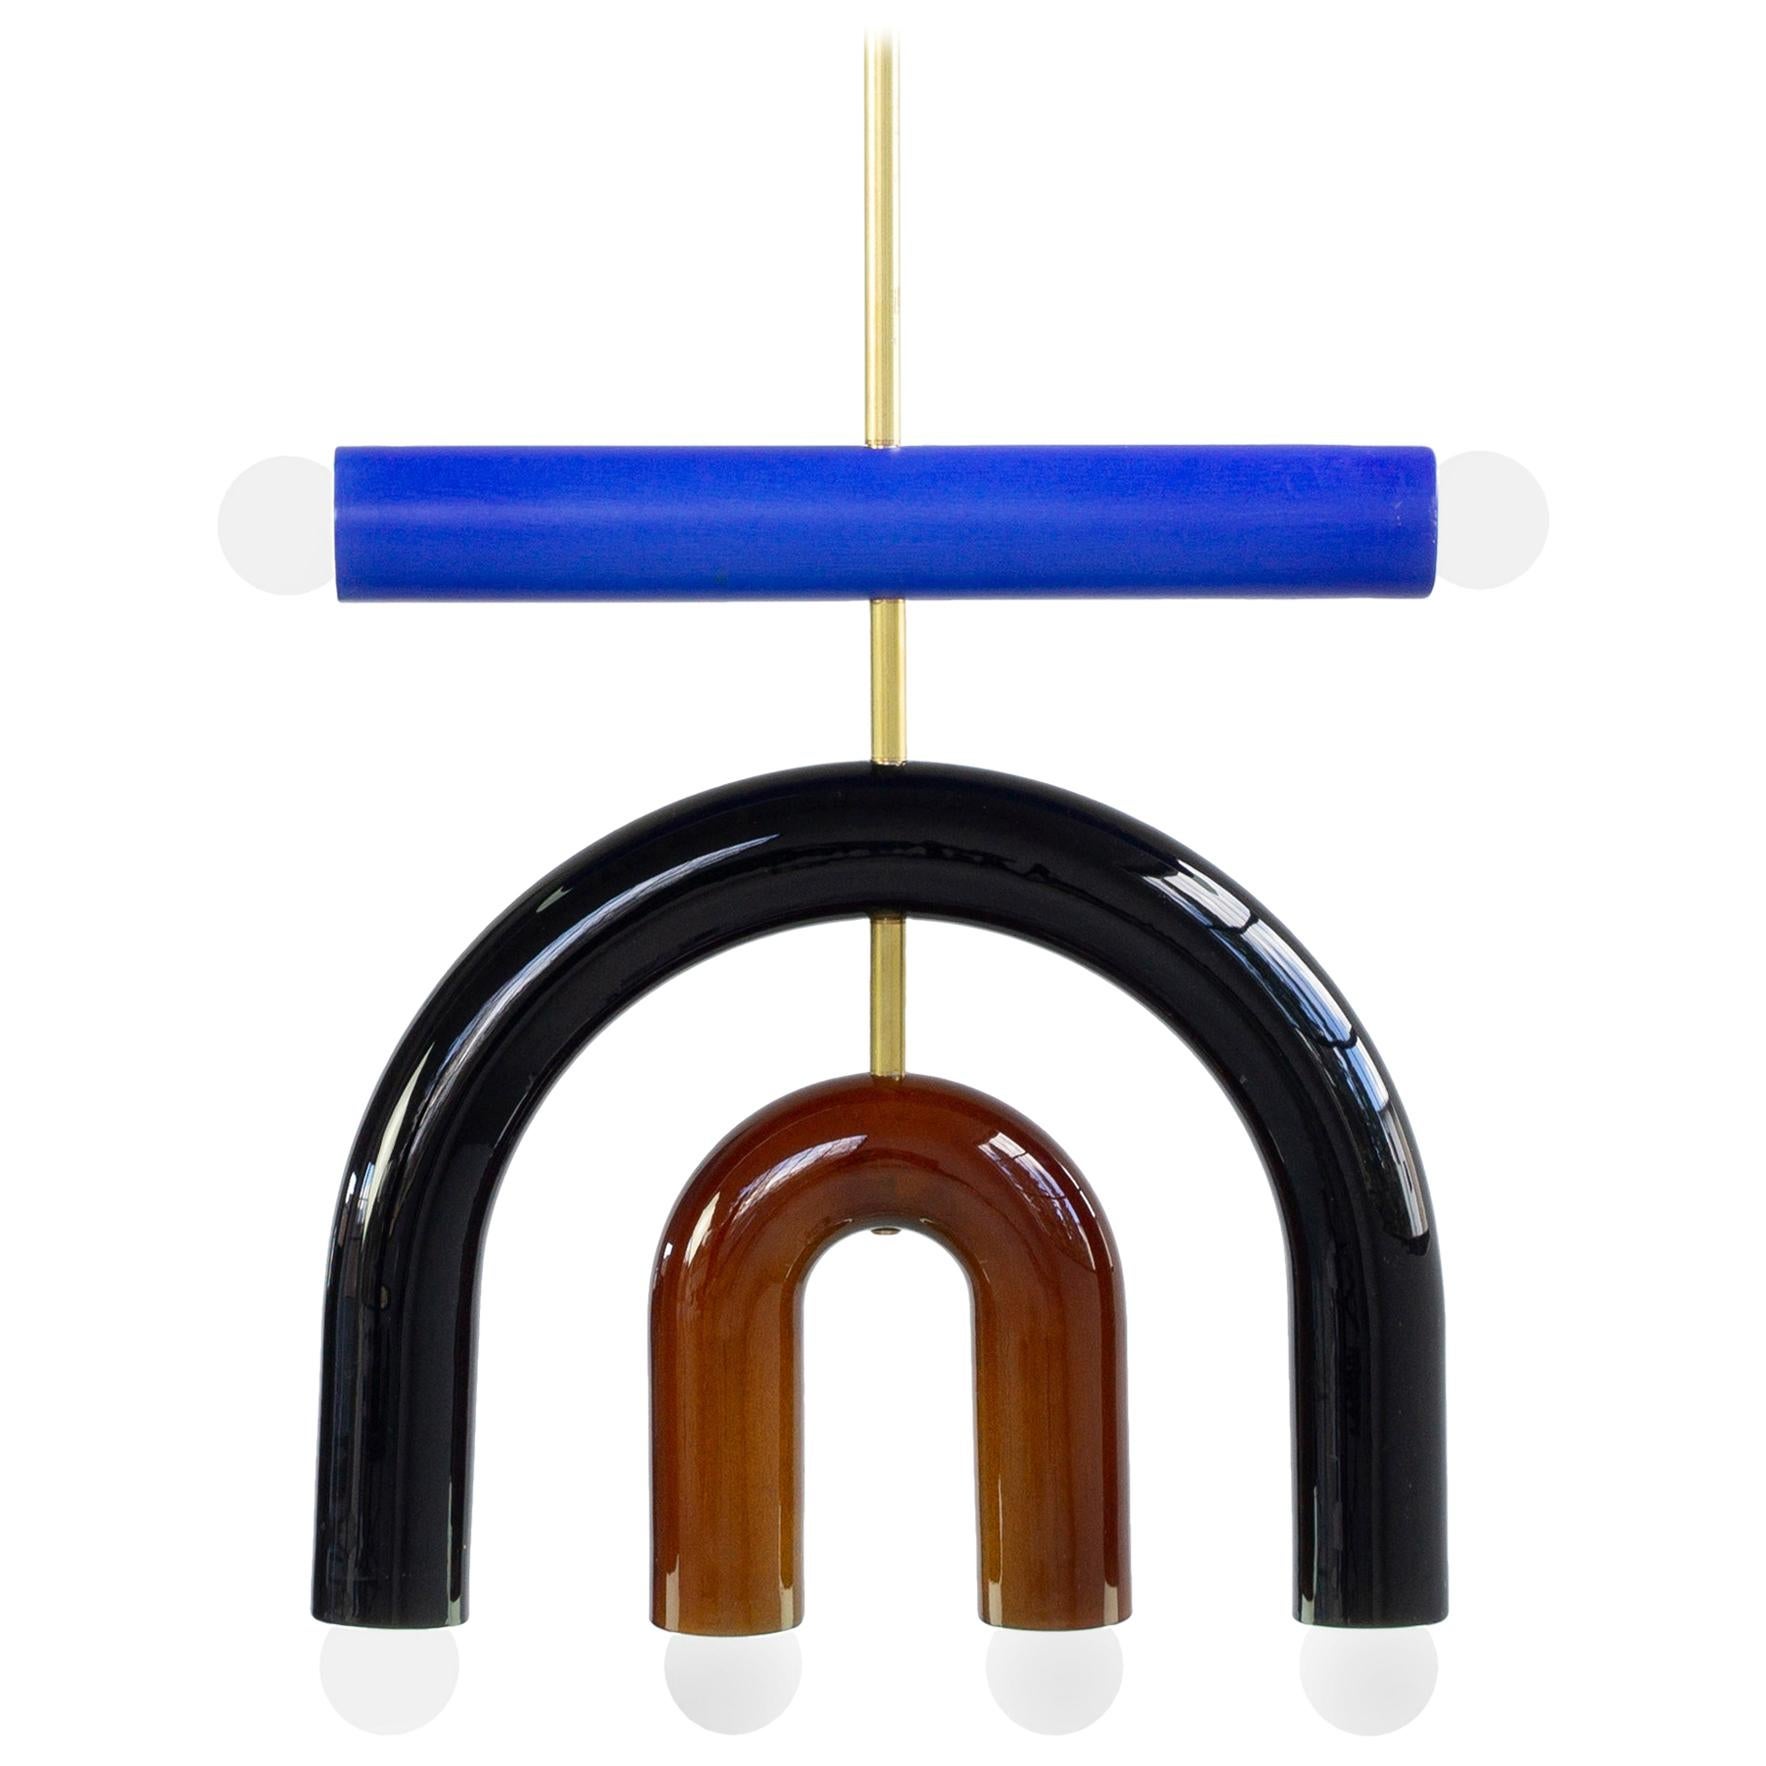 Anpassbare Hängeleuchte TRN D1, Messingstab, blaue, schwarze und braune Keramik 